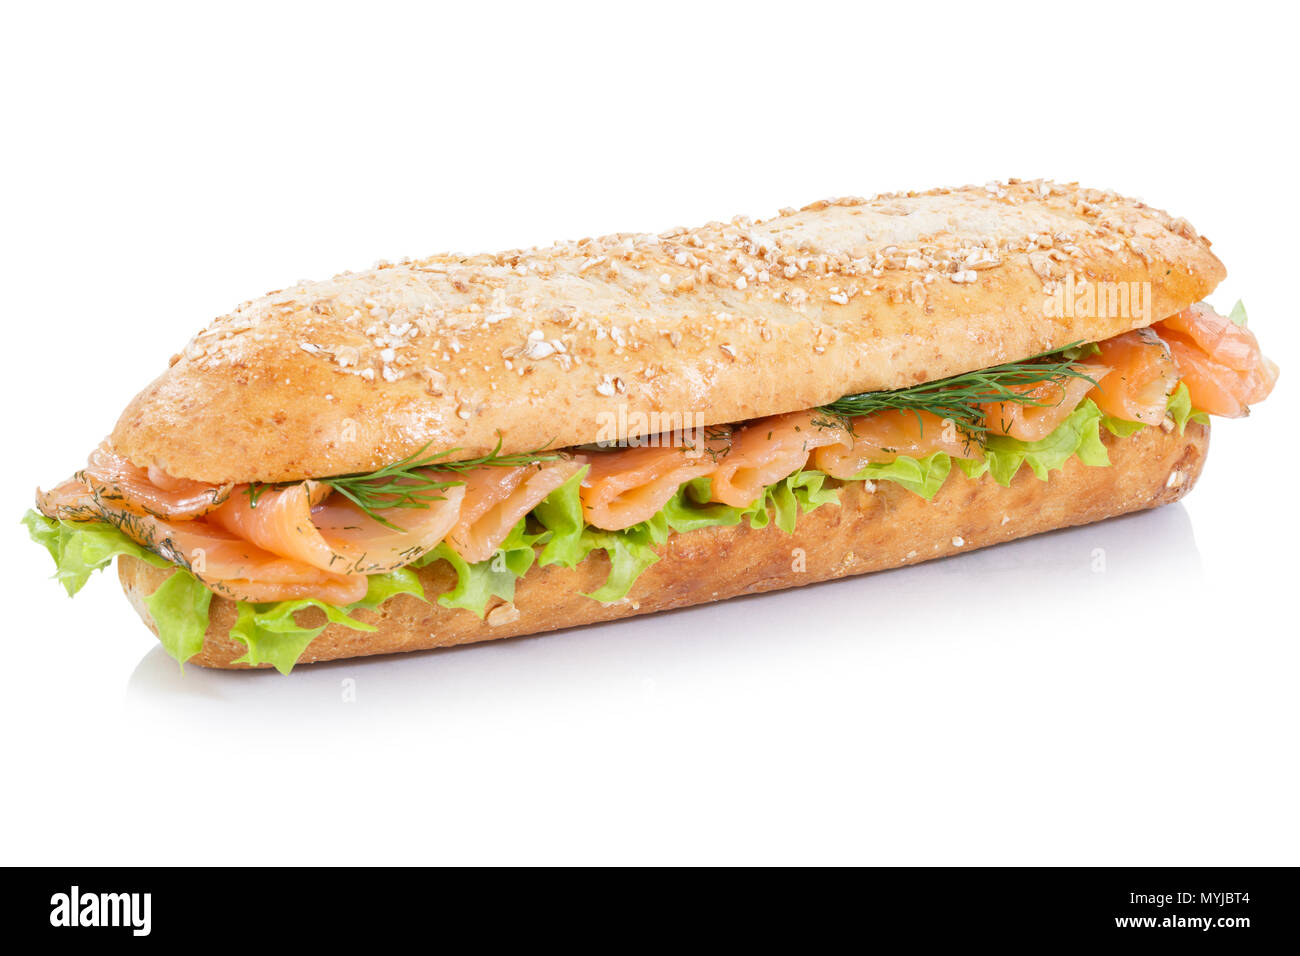 Sandwich Sub grani interi baguette con salmone affumicato pesce isolato su uno sfondo bianco Foto Stock